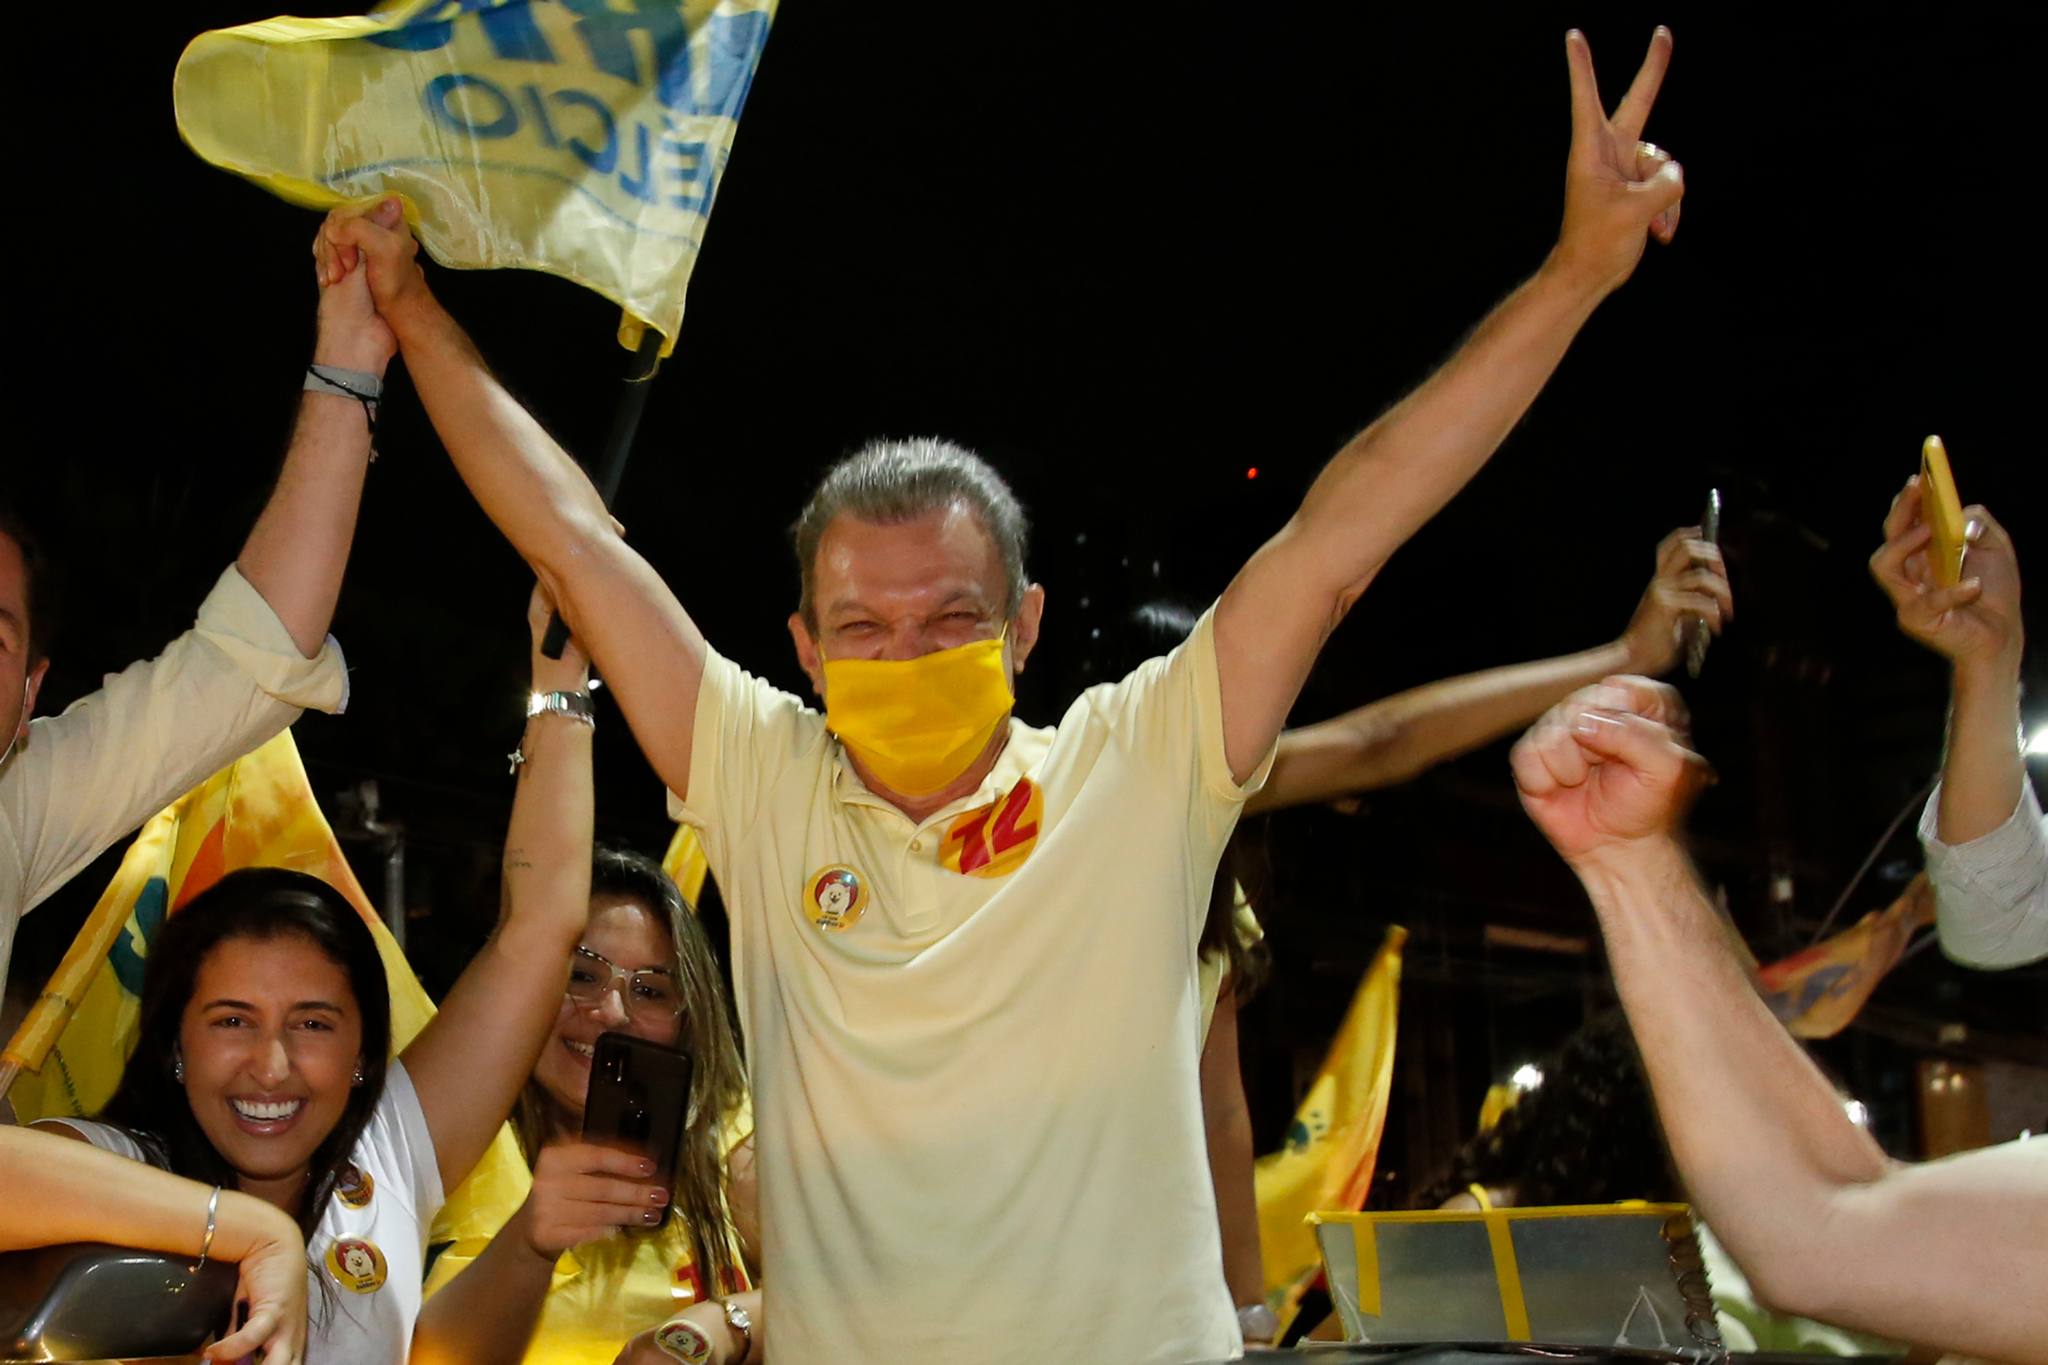 Eleito Prefeito de Fortaleza, Sarto sai às ruas para celebrar sua vitória nas urnas